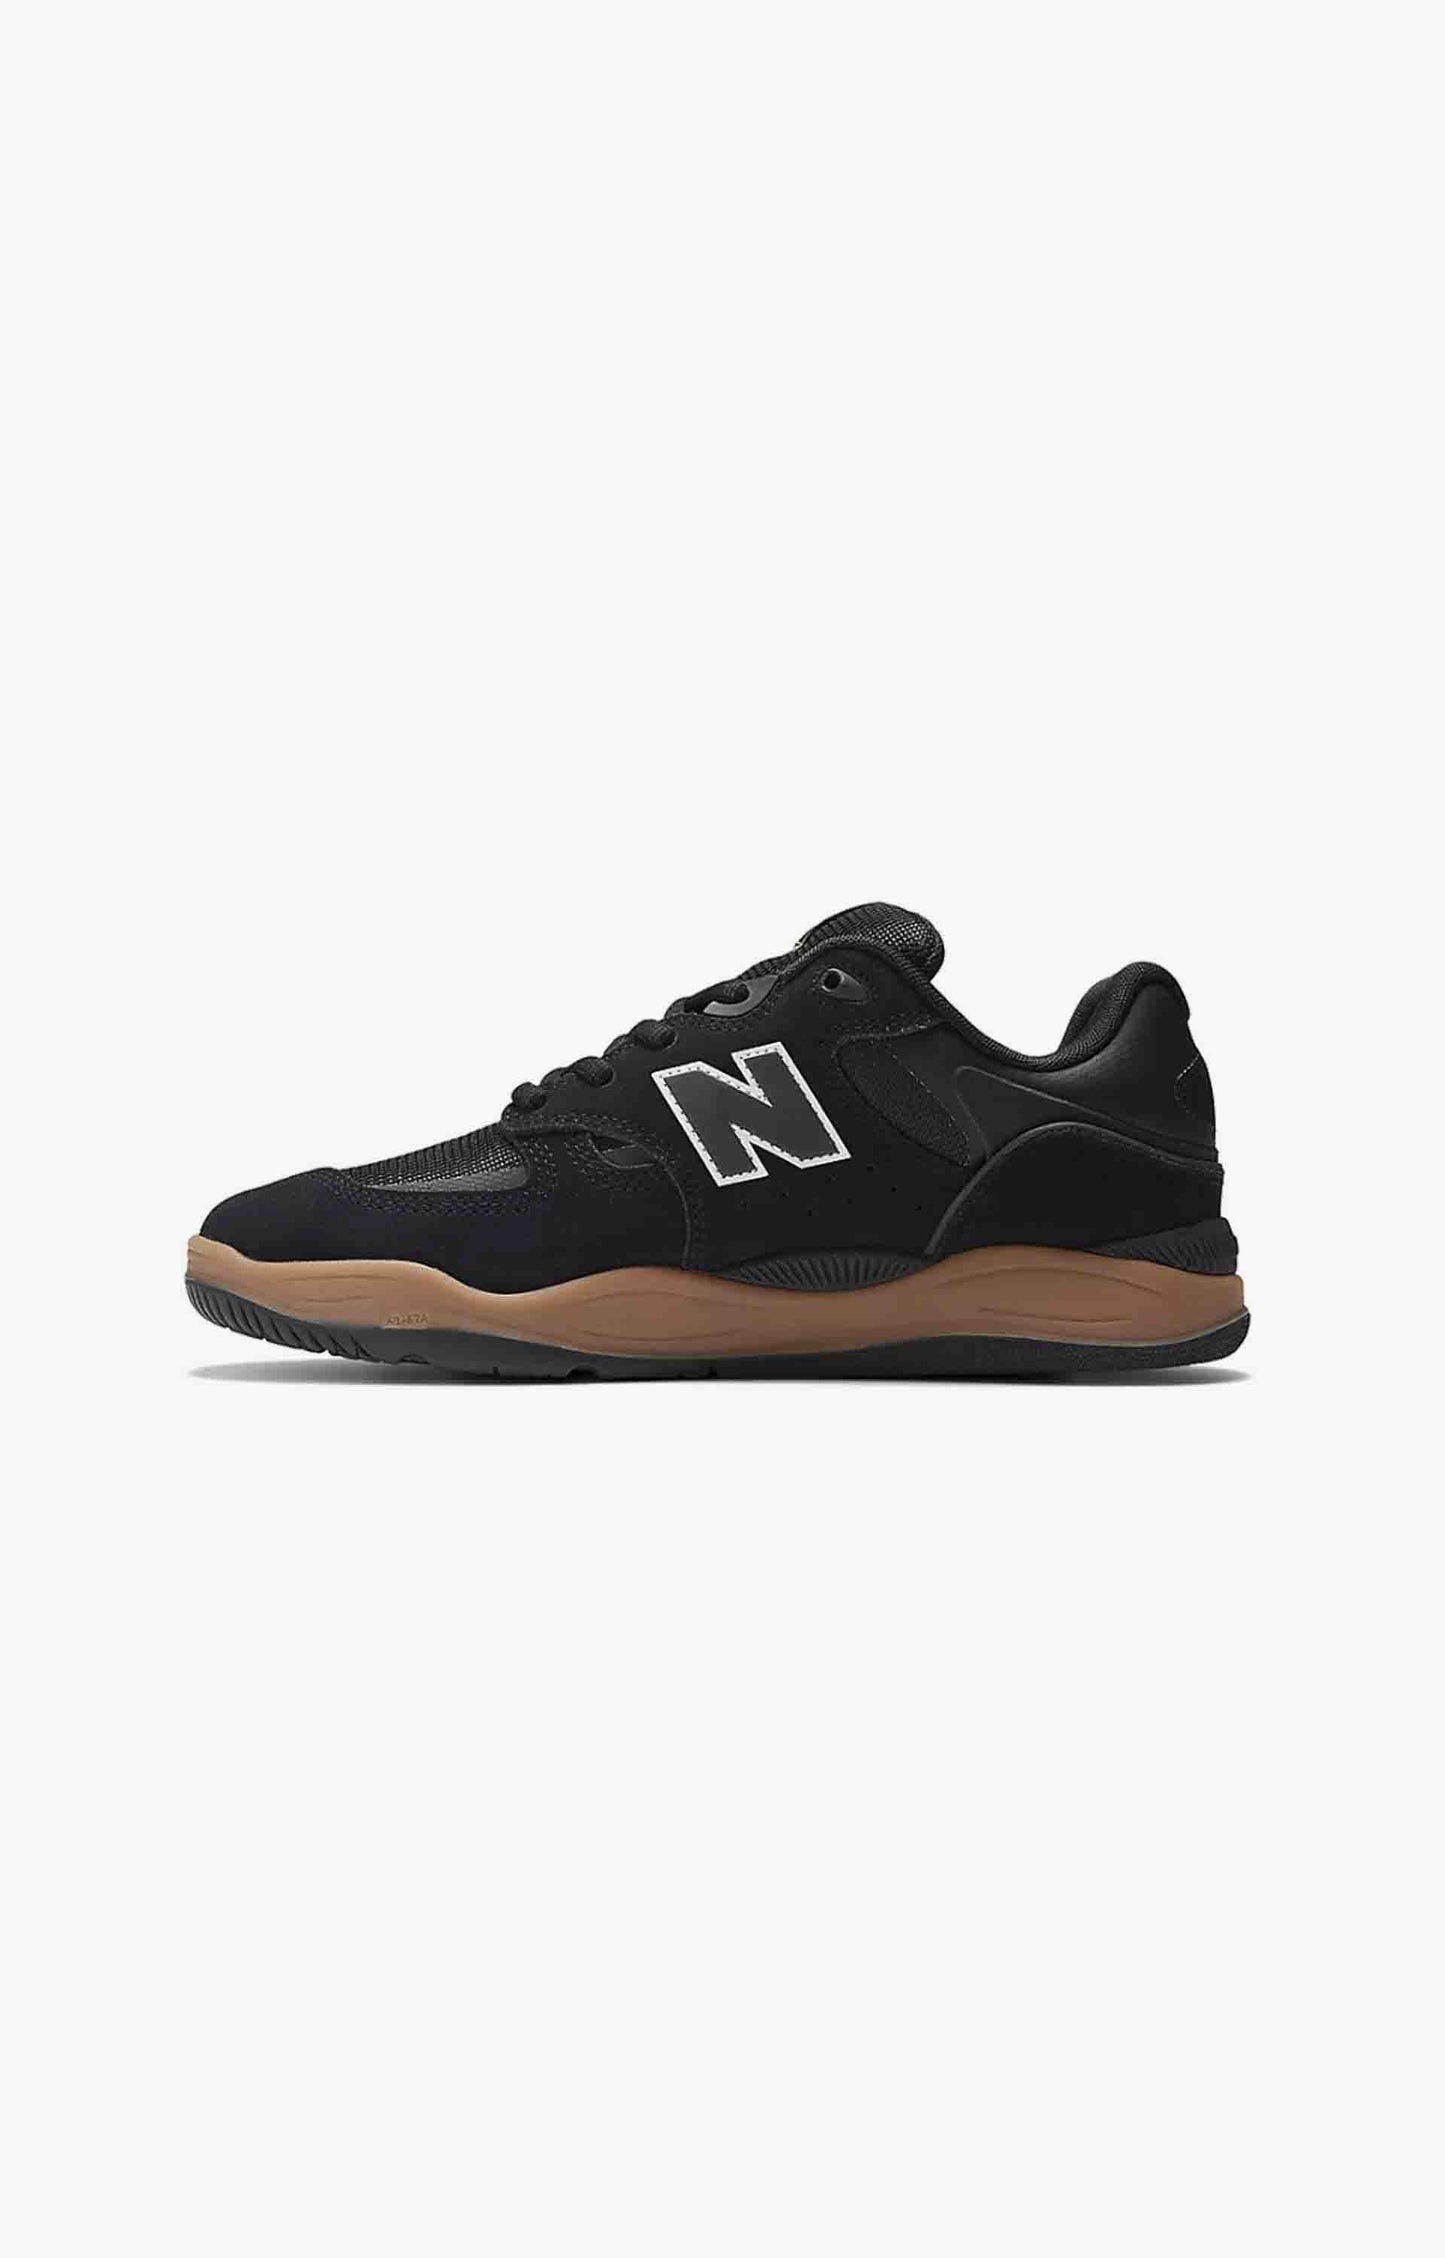 New Balance Numeric NM1010BC Black/Gum, Shoe